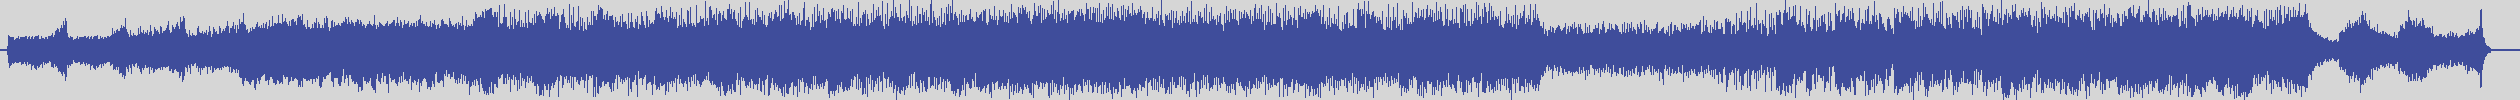 upr [UPR010] Növö - Cheree [Original Mix] audio wave form